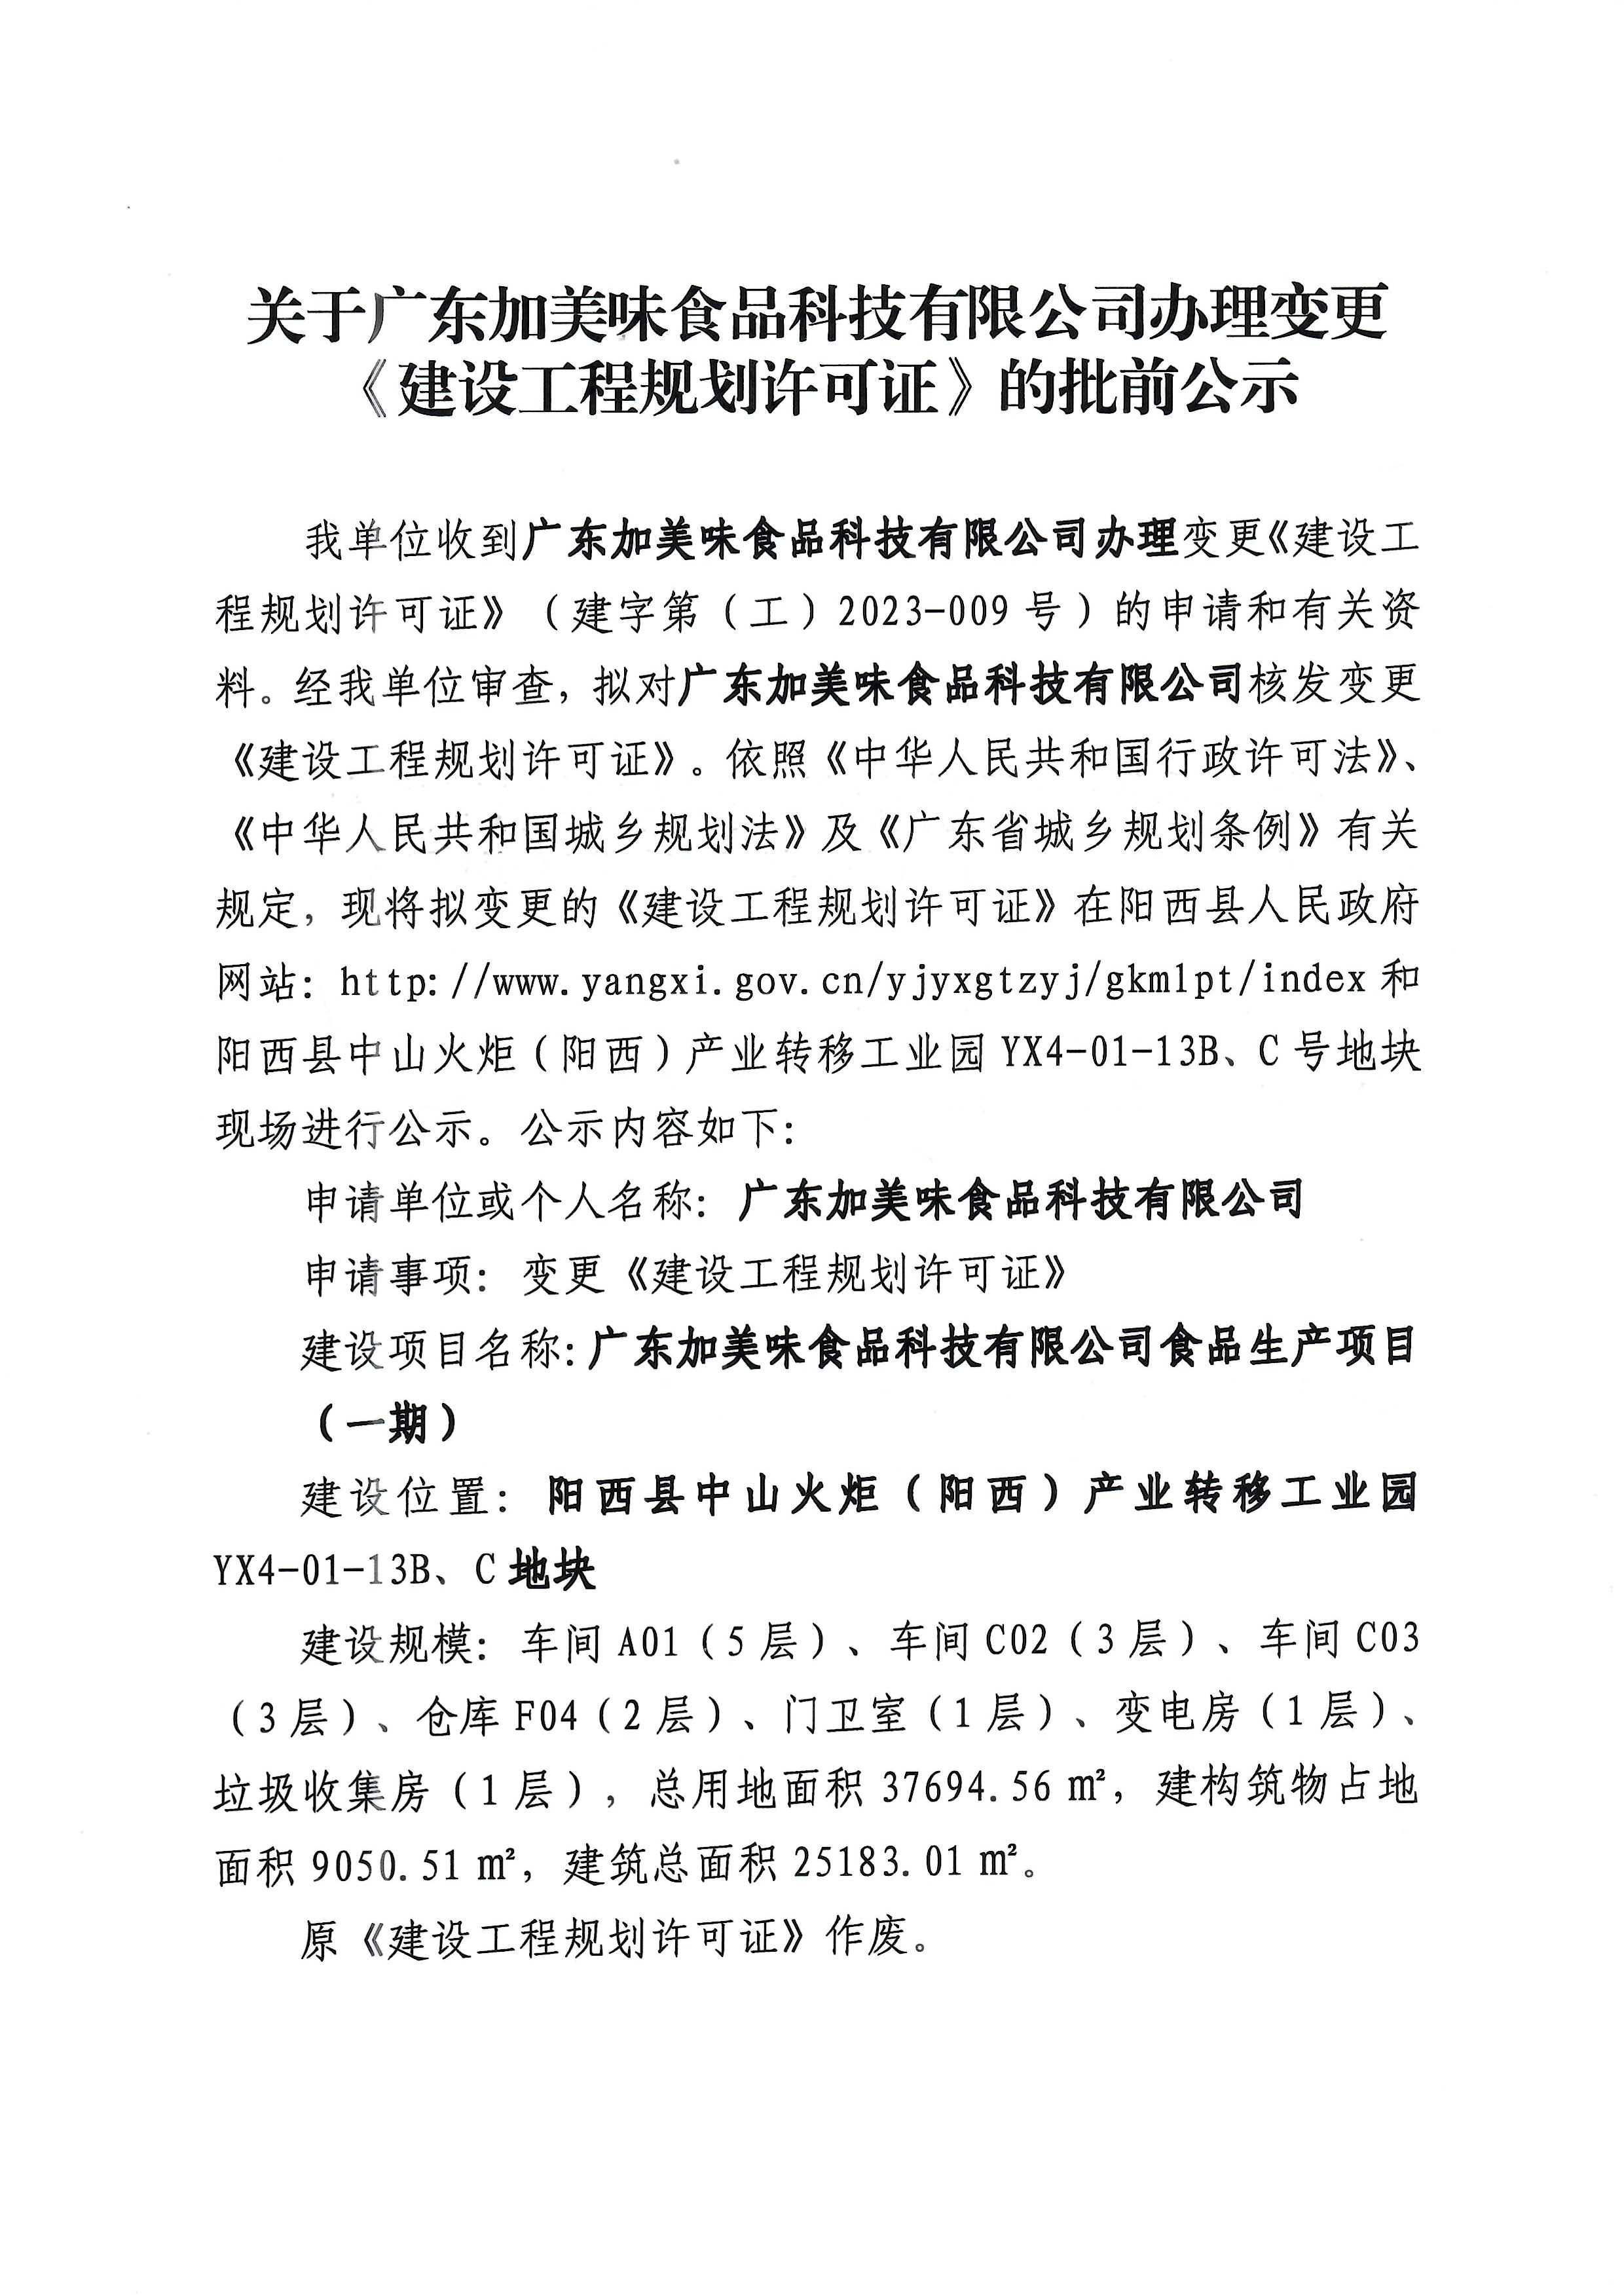 关于广东加美味食品科技有限公司办理变更《建设工程规划许可证》的批前公示1.jpg